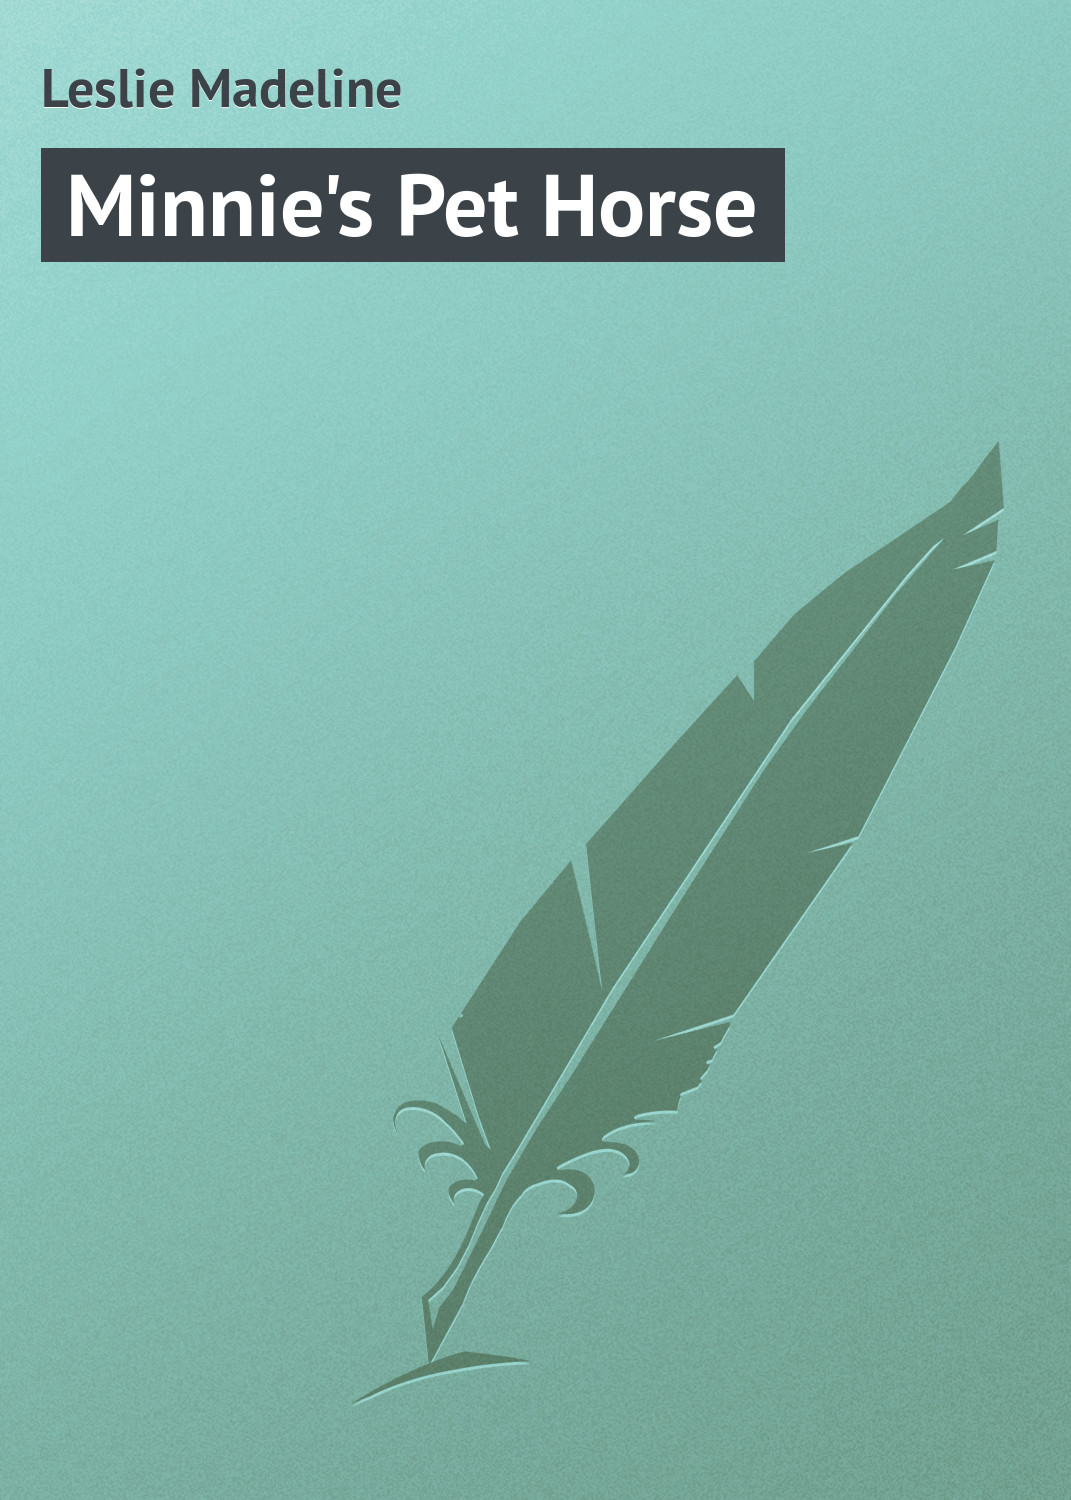 Книга Minnie's Pet Horse из серии , созданная Madeline Leslie, может относится к жанру Иностранные языки, Зарубежная классика, Зарубежные детские книги. Стоимость электронной книги Minnie's Pet Horse с идентификатором 23155347 составляет 5.99 руб.